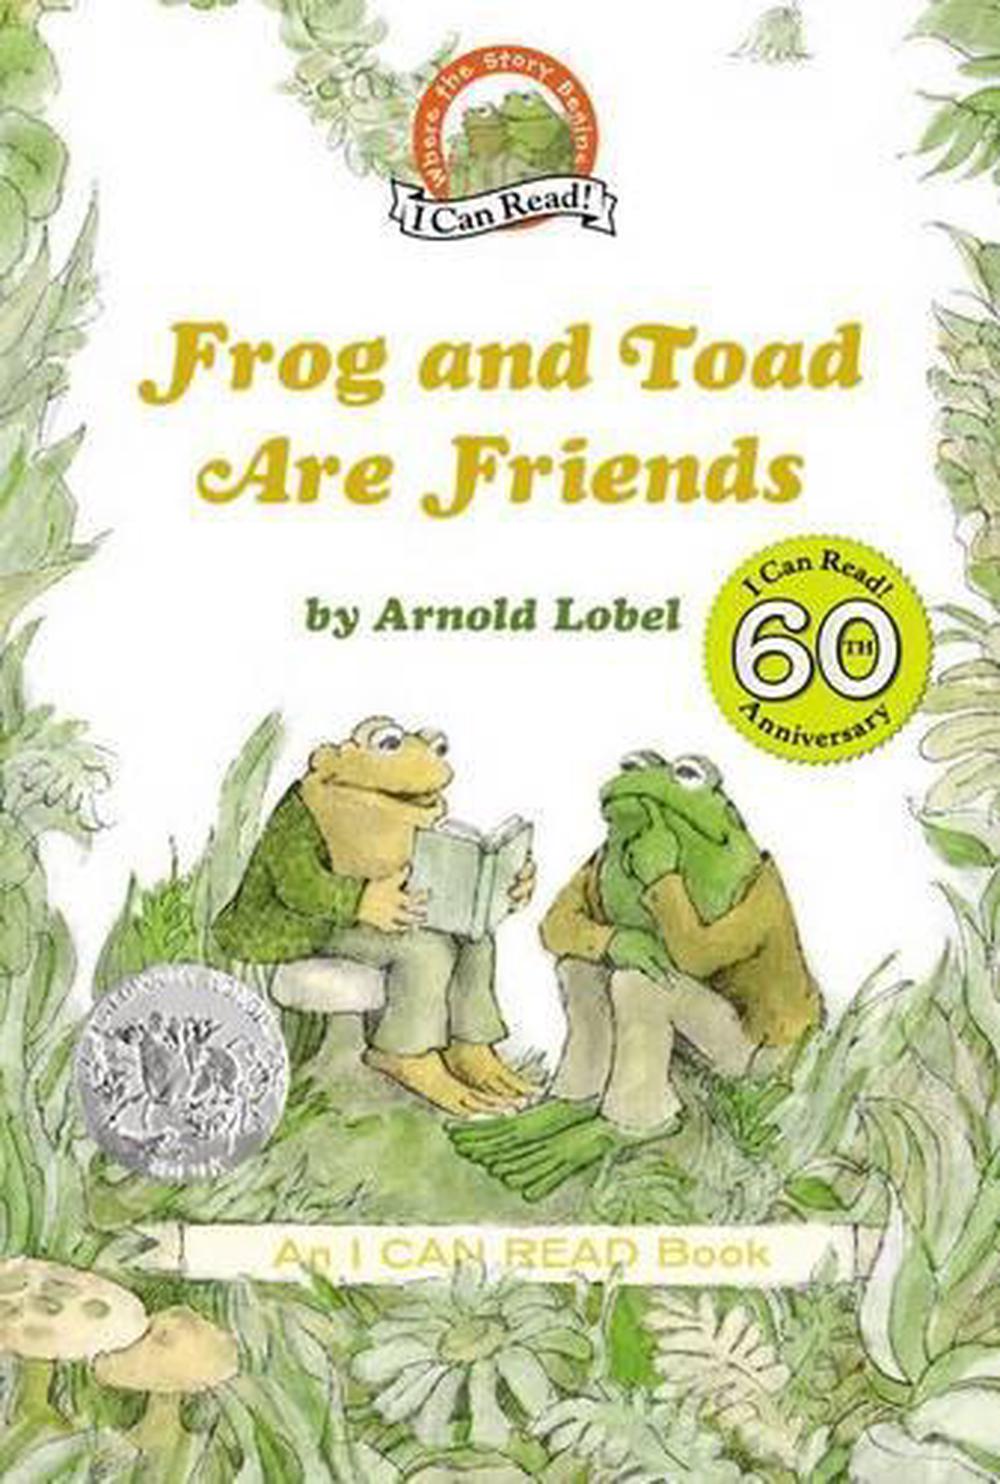 frog-vs-toad-worksheets-99worksheets